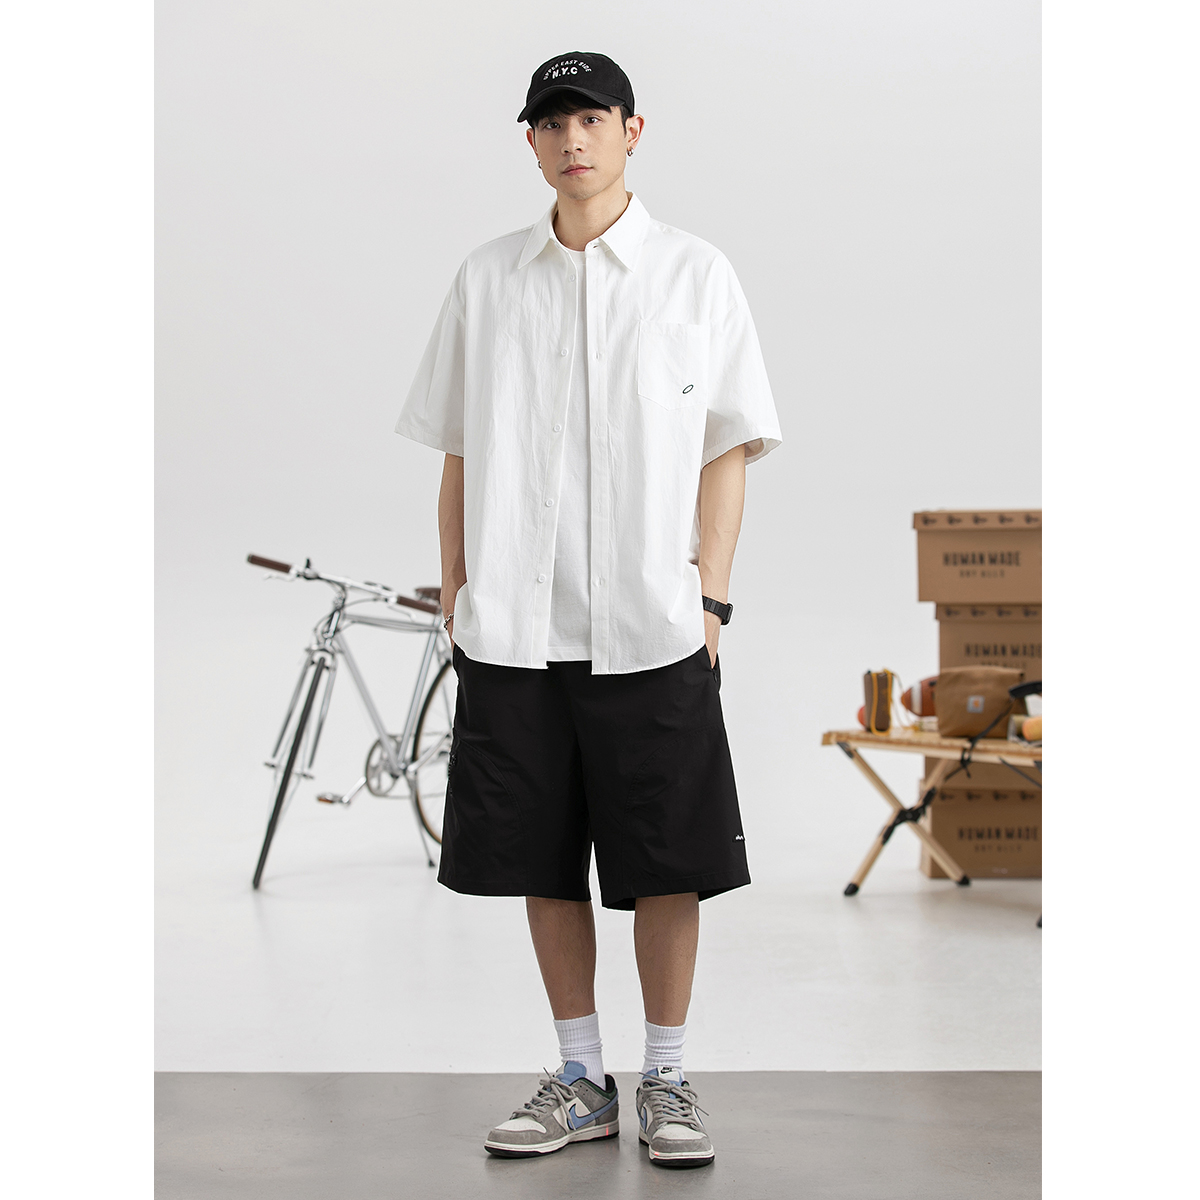 coolramon夏季日系复古衬衫男士原创纯色简约短袖小众工装上衣